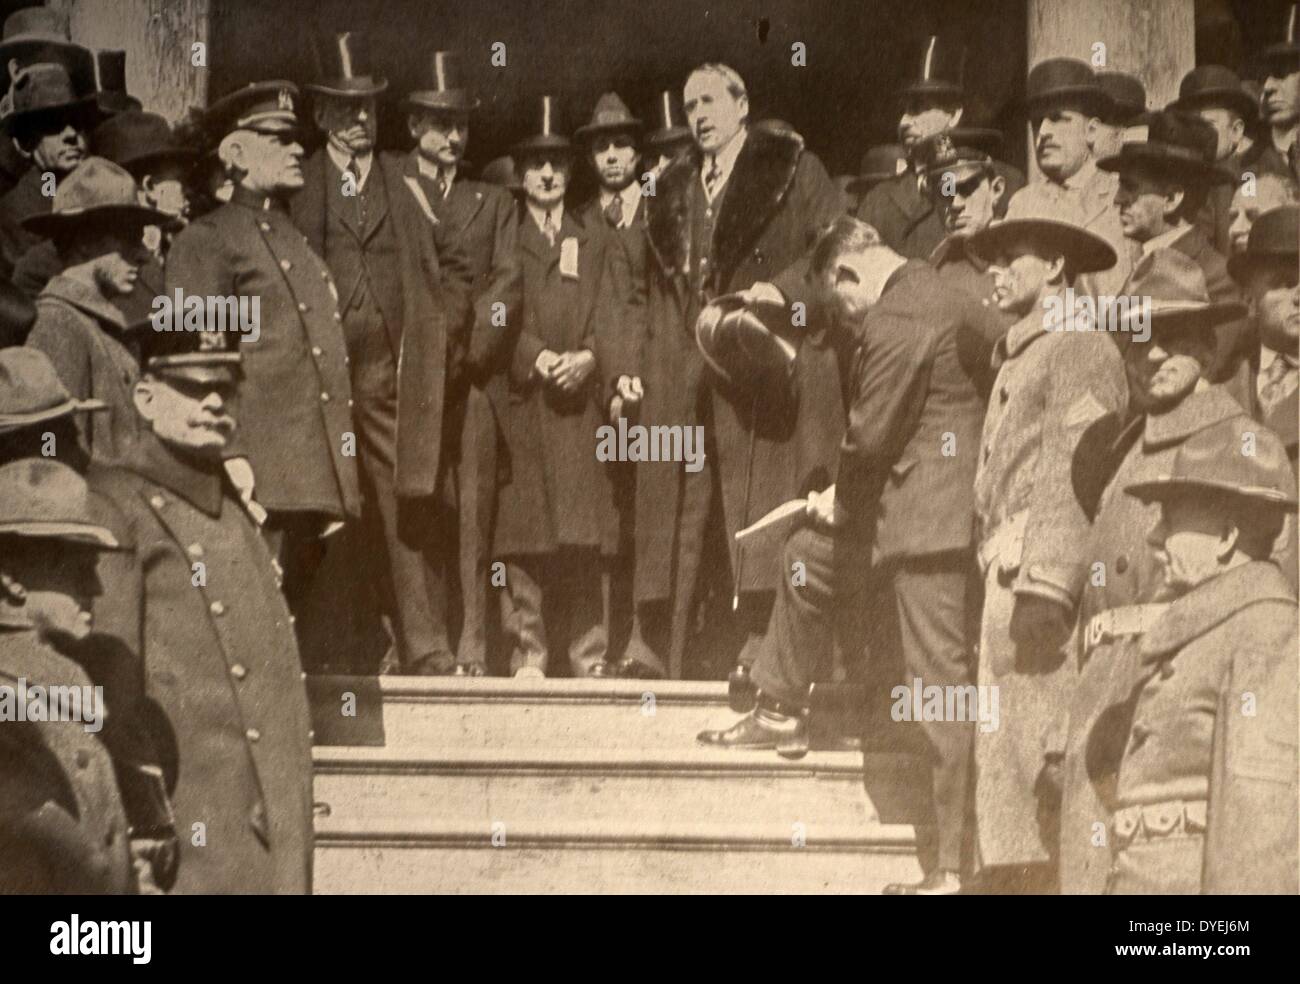 La prima guerra mondiale - James Watson Gerard (25 agosto 1867 - 6 settembre 1951) Stati Uniti avvocato e diplomatico. Dopo essere stato chiesto di lasciare la Germania nel 1917 come rappresentante statunitense in tale paese Foto Stock